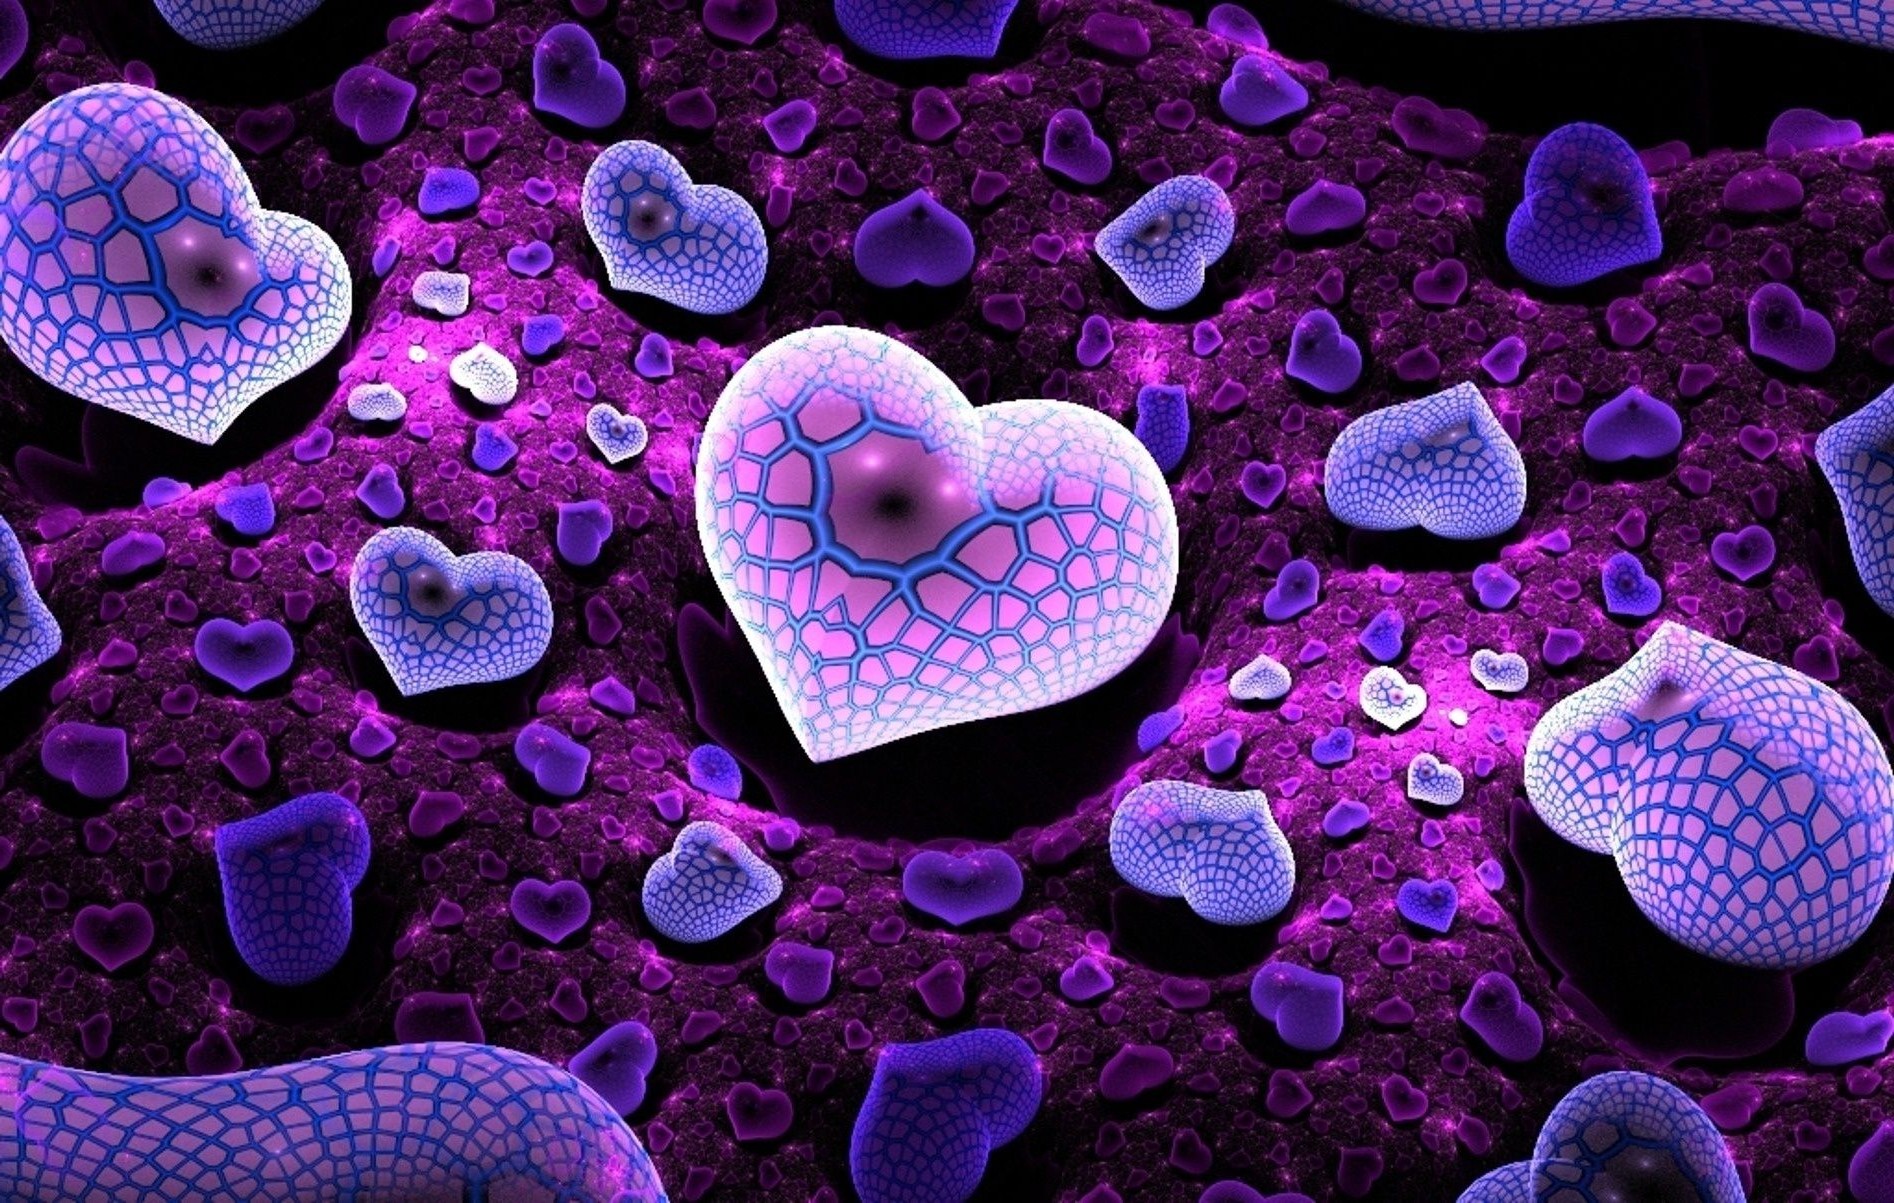 сердечки биология сотовый телефон кровь наука бактерии формы иллюстрация шаблон анатомия текстура аннотация рабочего стола образы научный